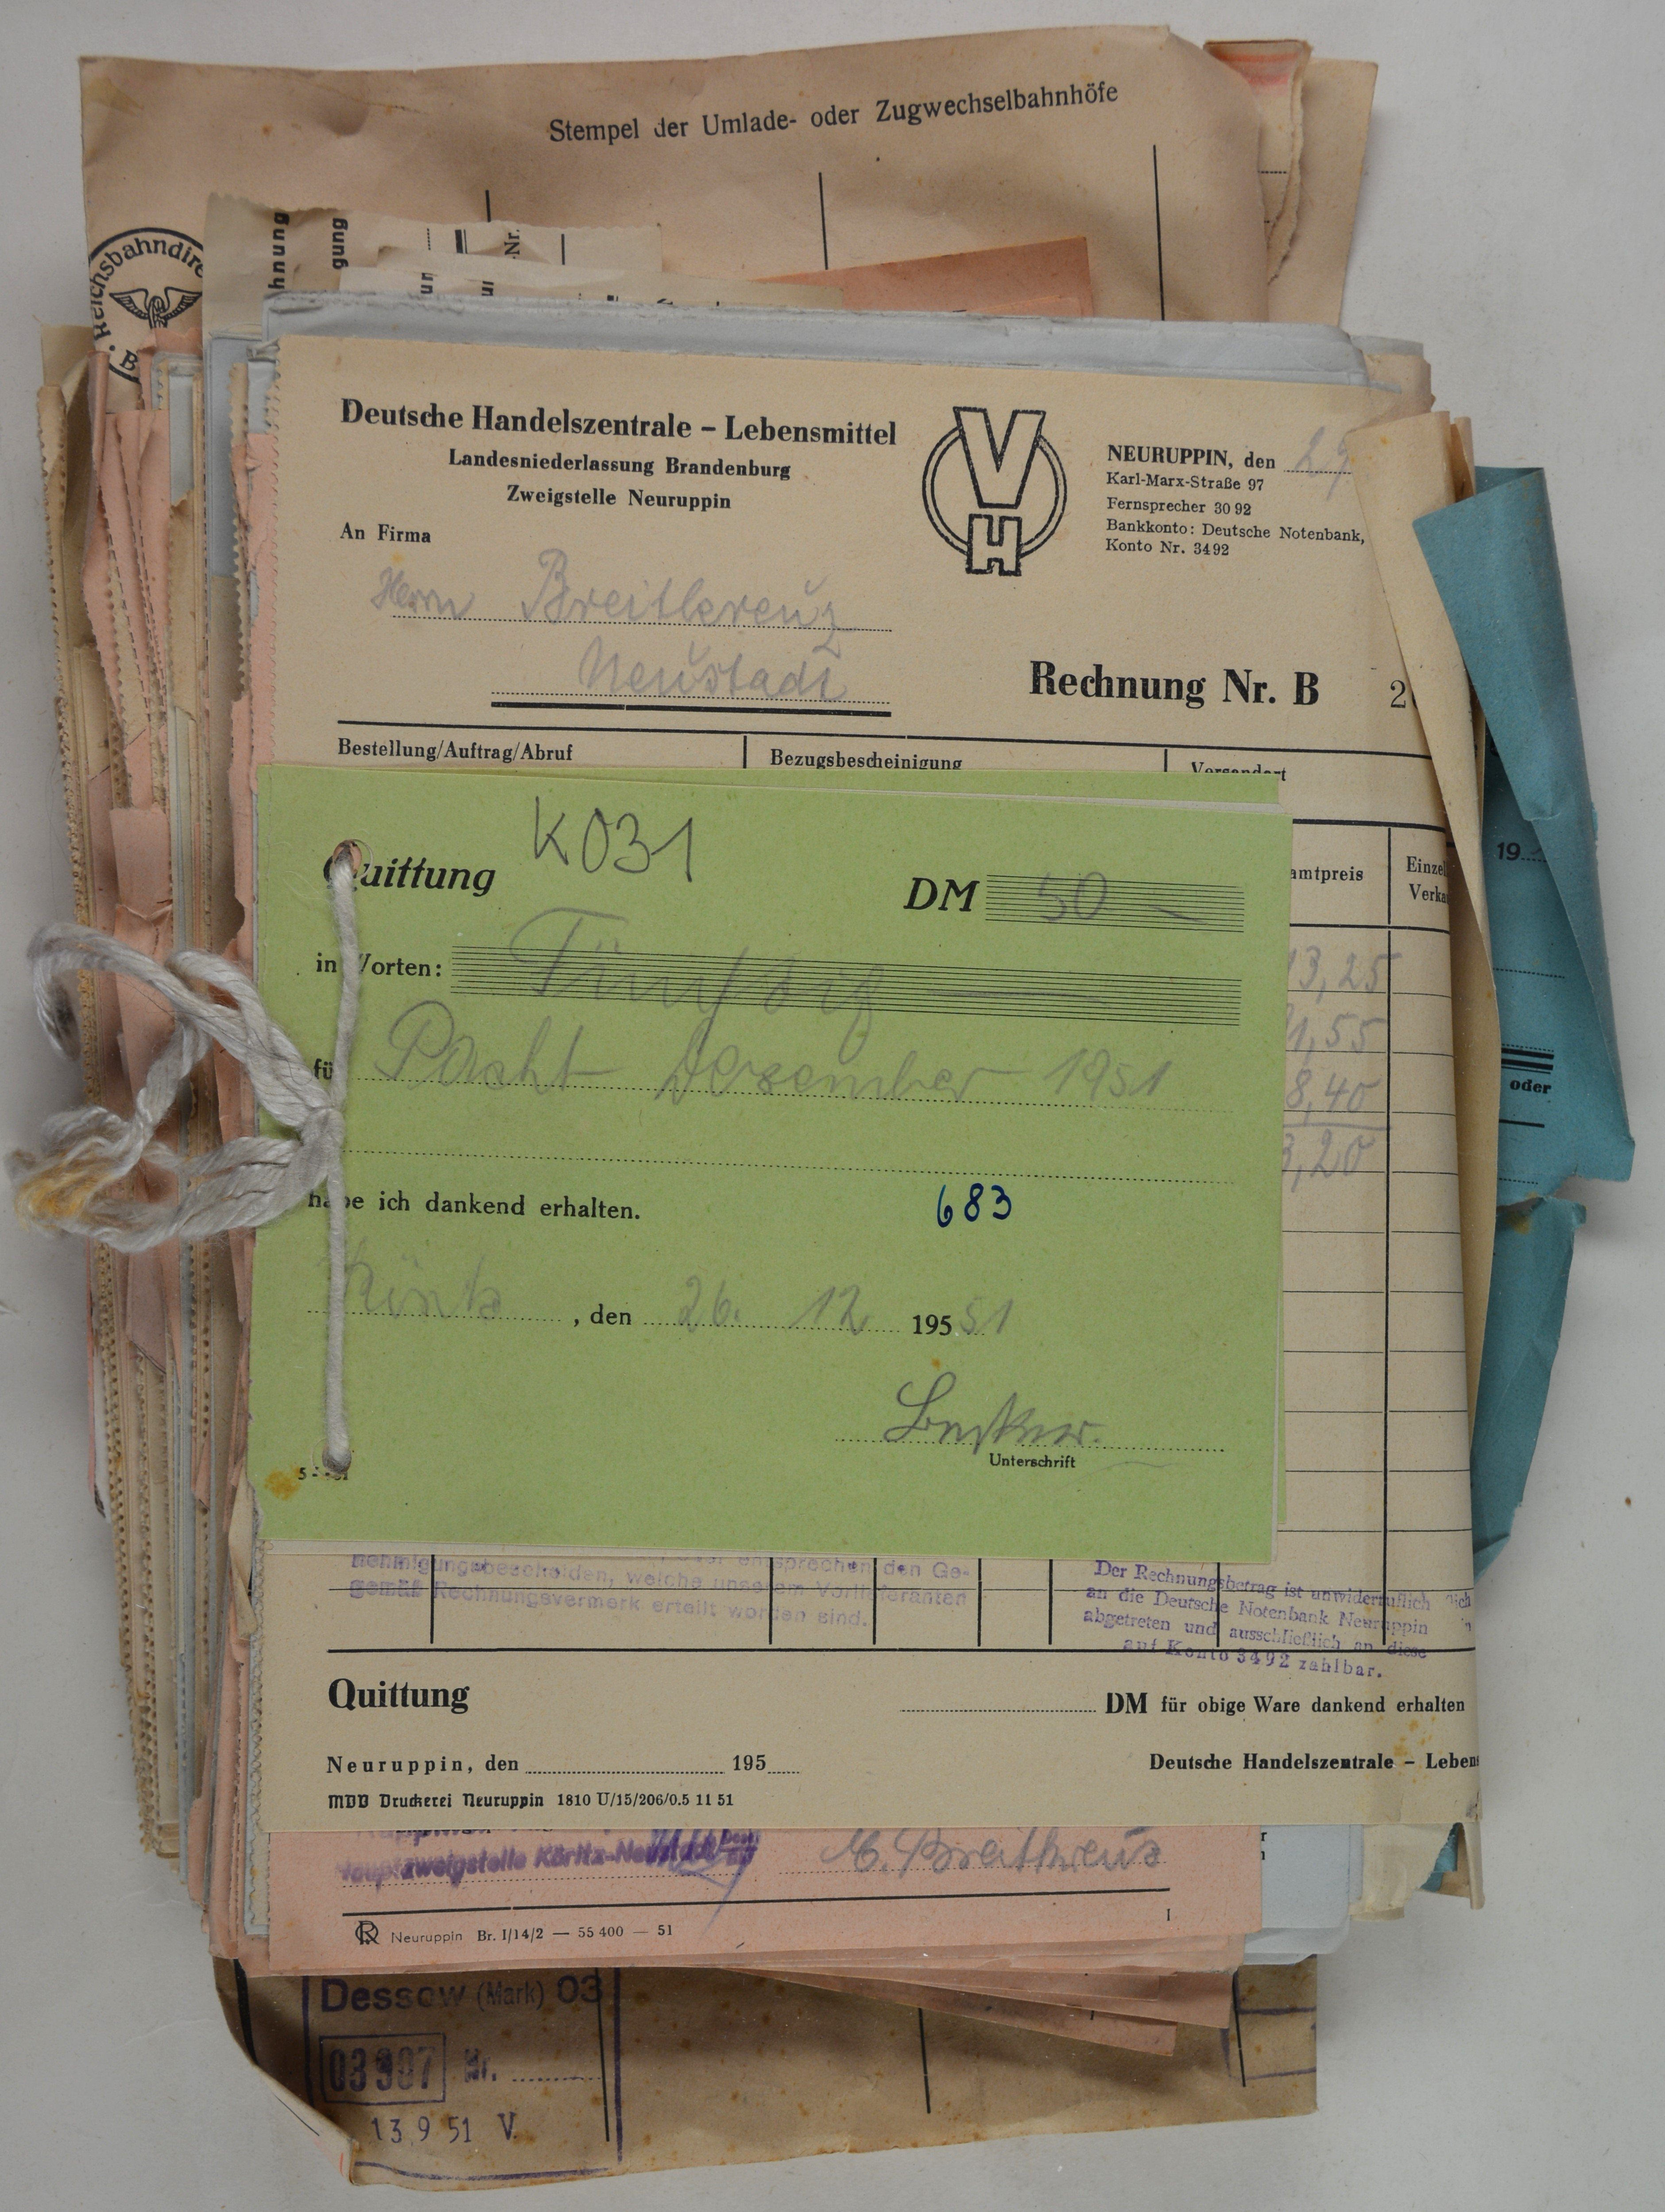 Rechnungen für Wilhelm und Else Breitkreuz aus dem Jahr 1951 (DDR Geschichtsmuseum im Dokumentationszentrum Perleberg CC BY-SA)